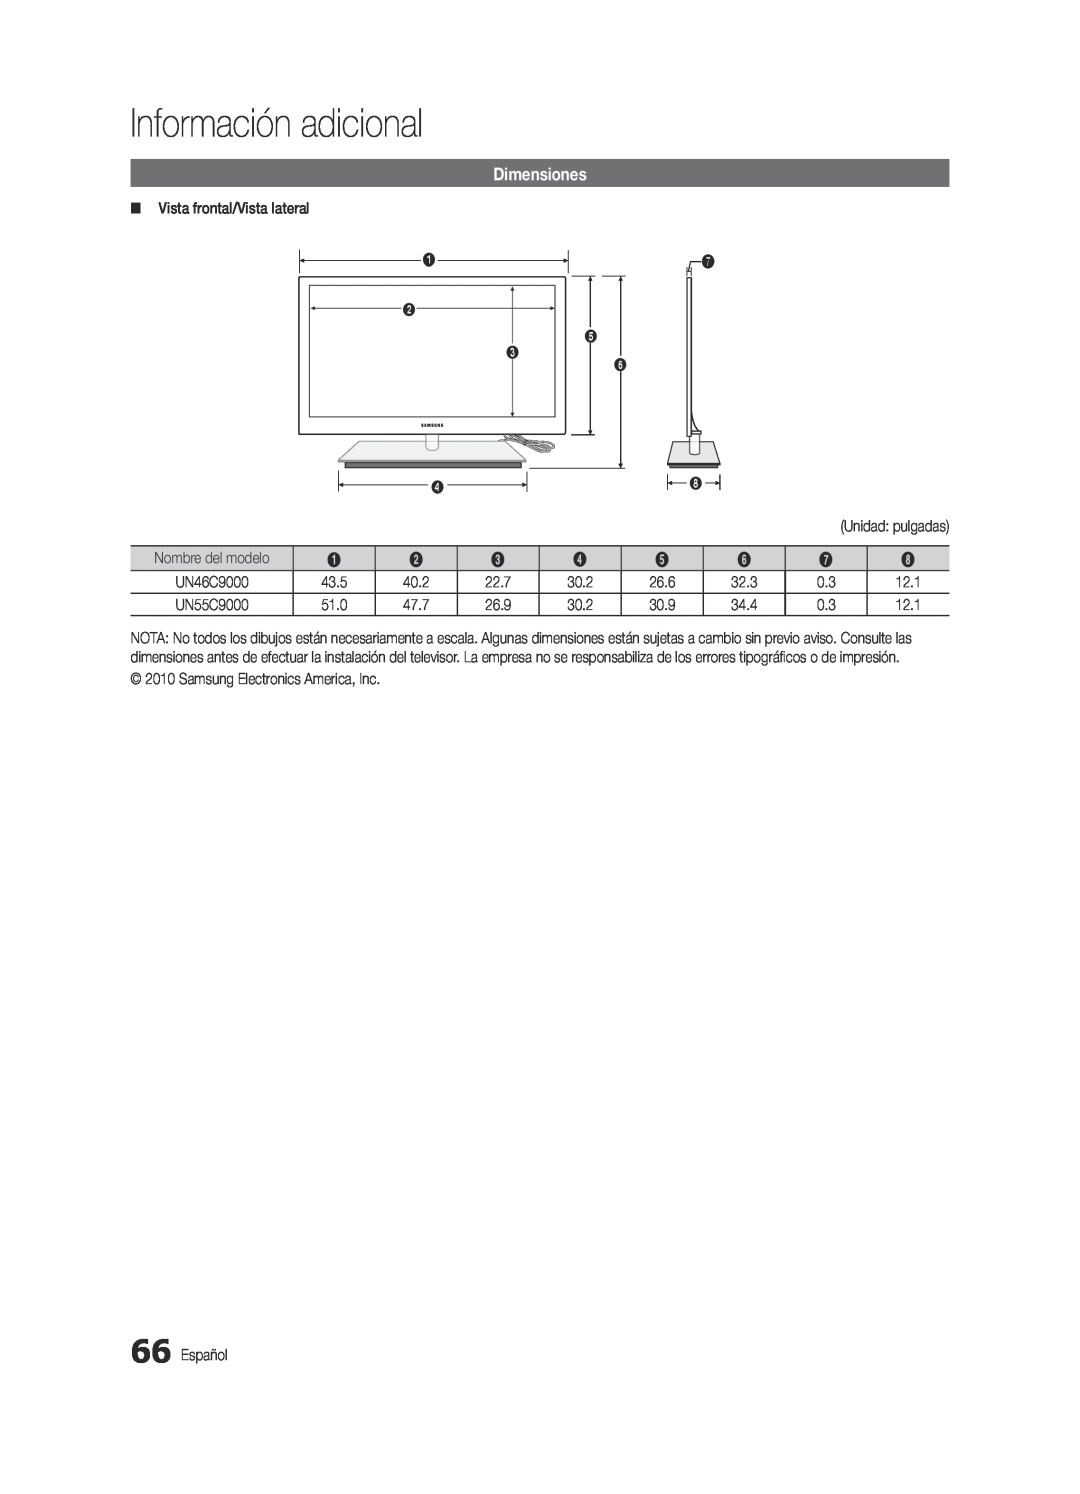 Samsung BN68-03088A-01, Series C9 user manual Dimensiones, Información adicional 